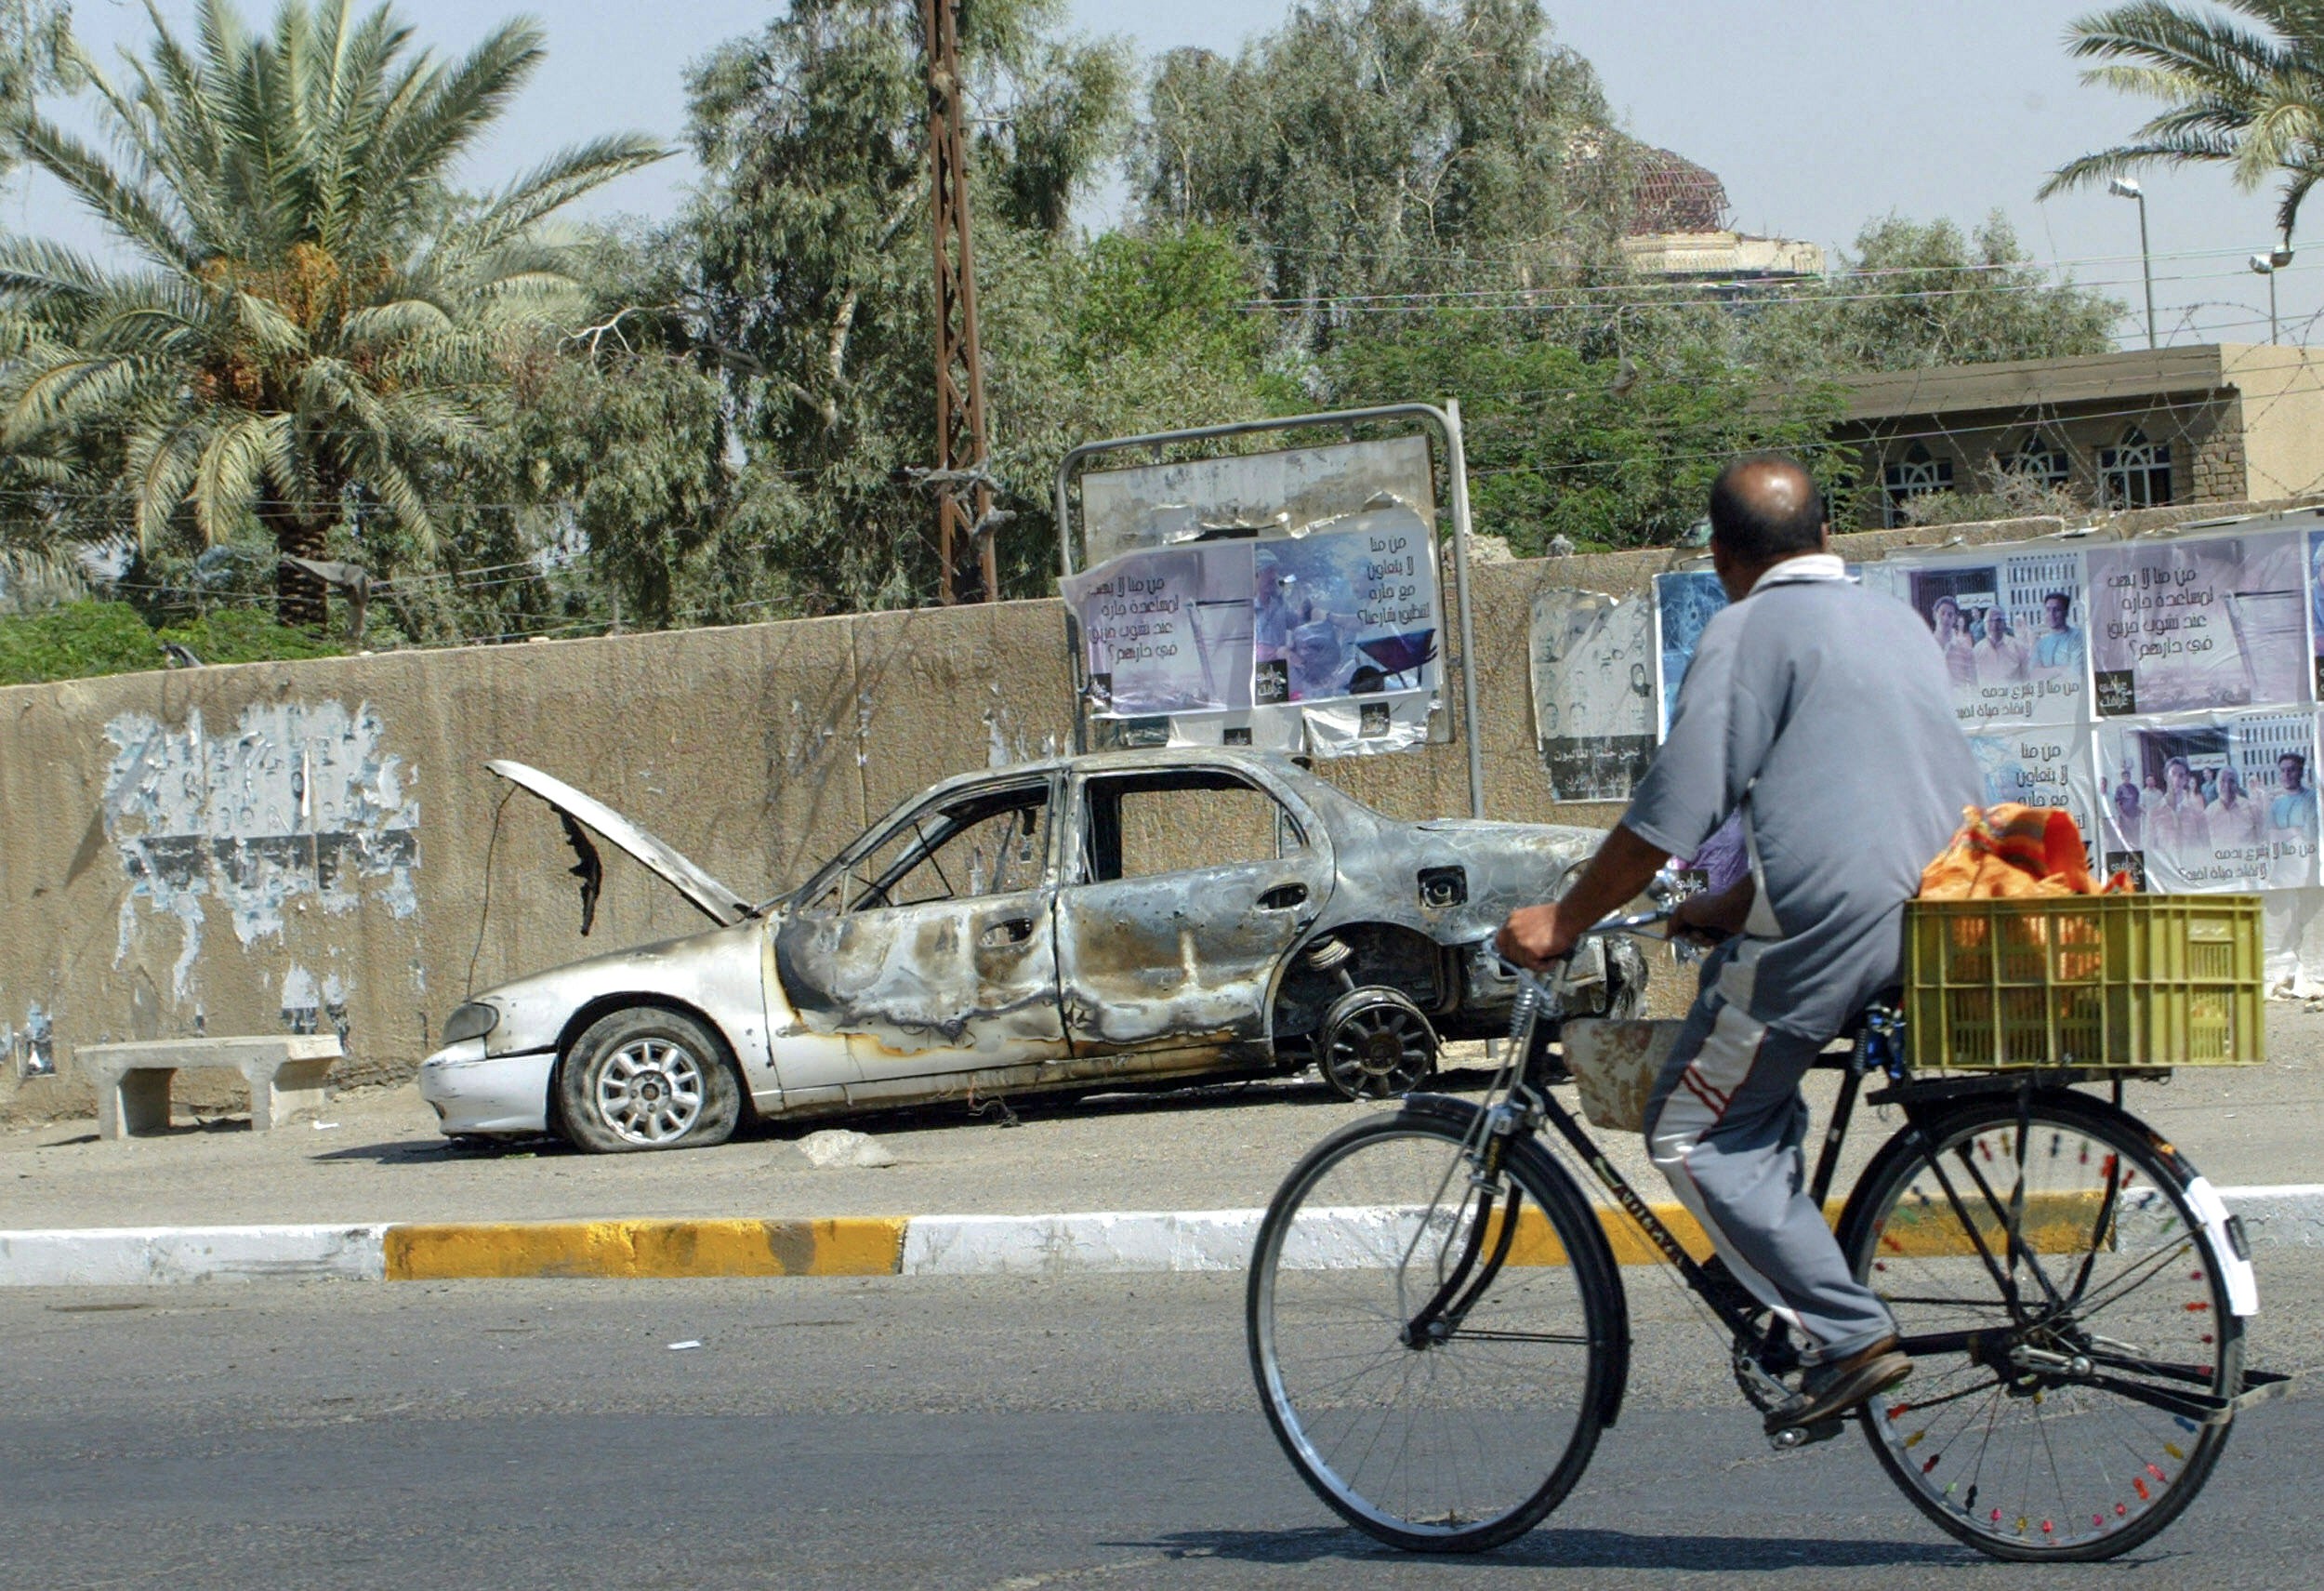 Иракский мужчина едет на велосипеде, проезжая мимо останков автомобиля в Багдаде, 20 сентября 2007 года. Автомобиль был сожжен во время инцидента, когда охранники Blackwater, сопровождавшие сотрудников посольства США, открыли огонь в районе Багдада 16 сентября 2007 года, в результате чего 10 человек погибли и получили ранения. 13. Ирак и Соединенные Штаты договорились создать совместную комиссию для изучения безопасности гражданских лиц правительства США в Ираке после смертельной стрельбы с участием частной охранной фирмы Blackwater, сообщил официальный представитель Госдепартамента Том Кейси.  AFP PHOTO / ALI YUSSEF (Фото следует читать ALI YUSSEF / AFP через Getty Images)